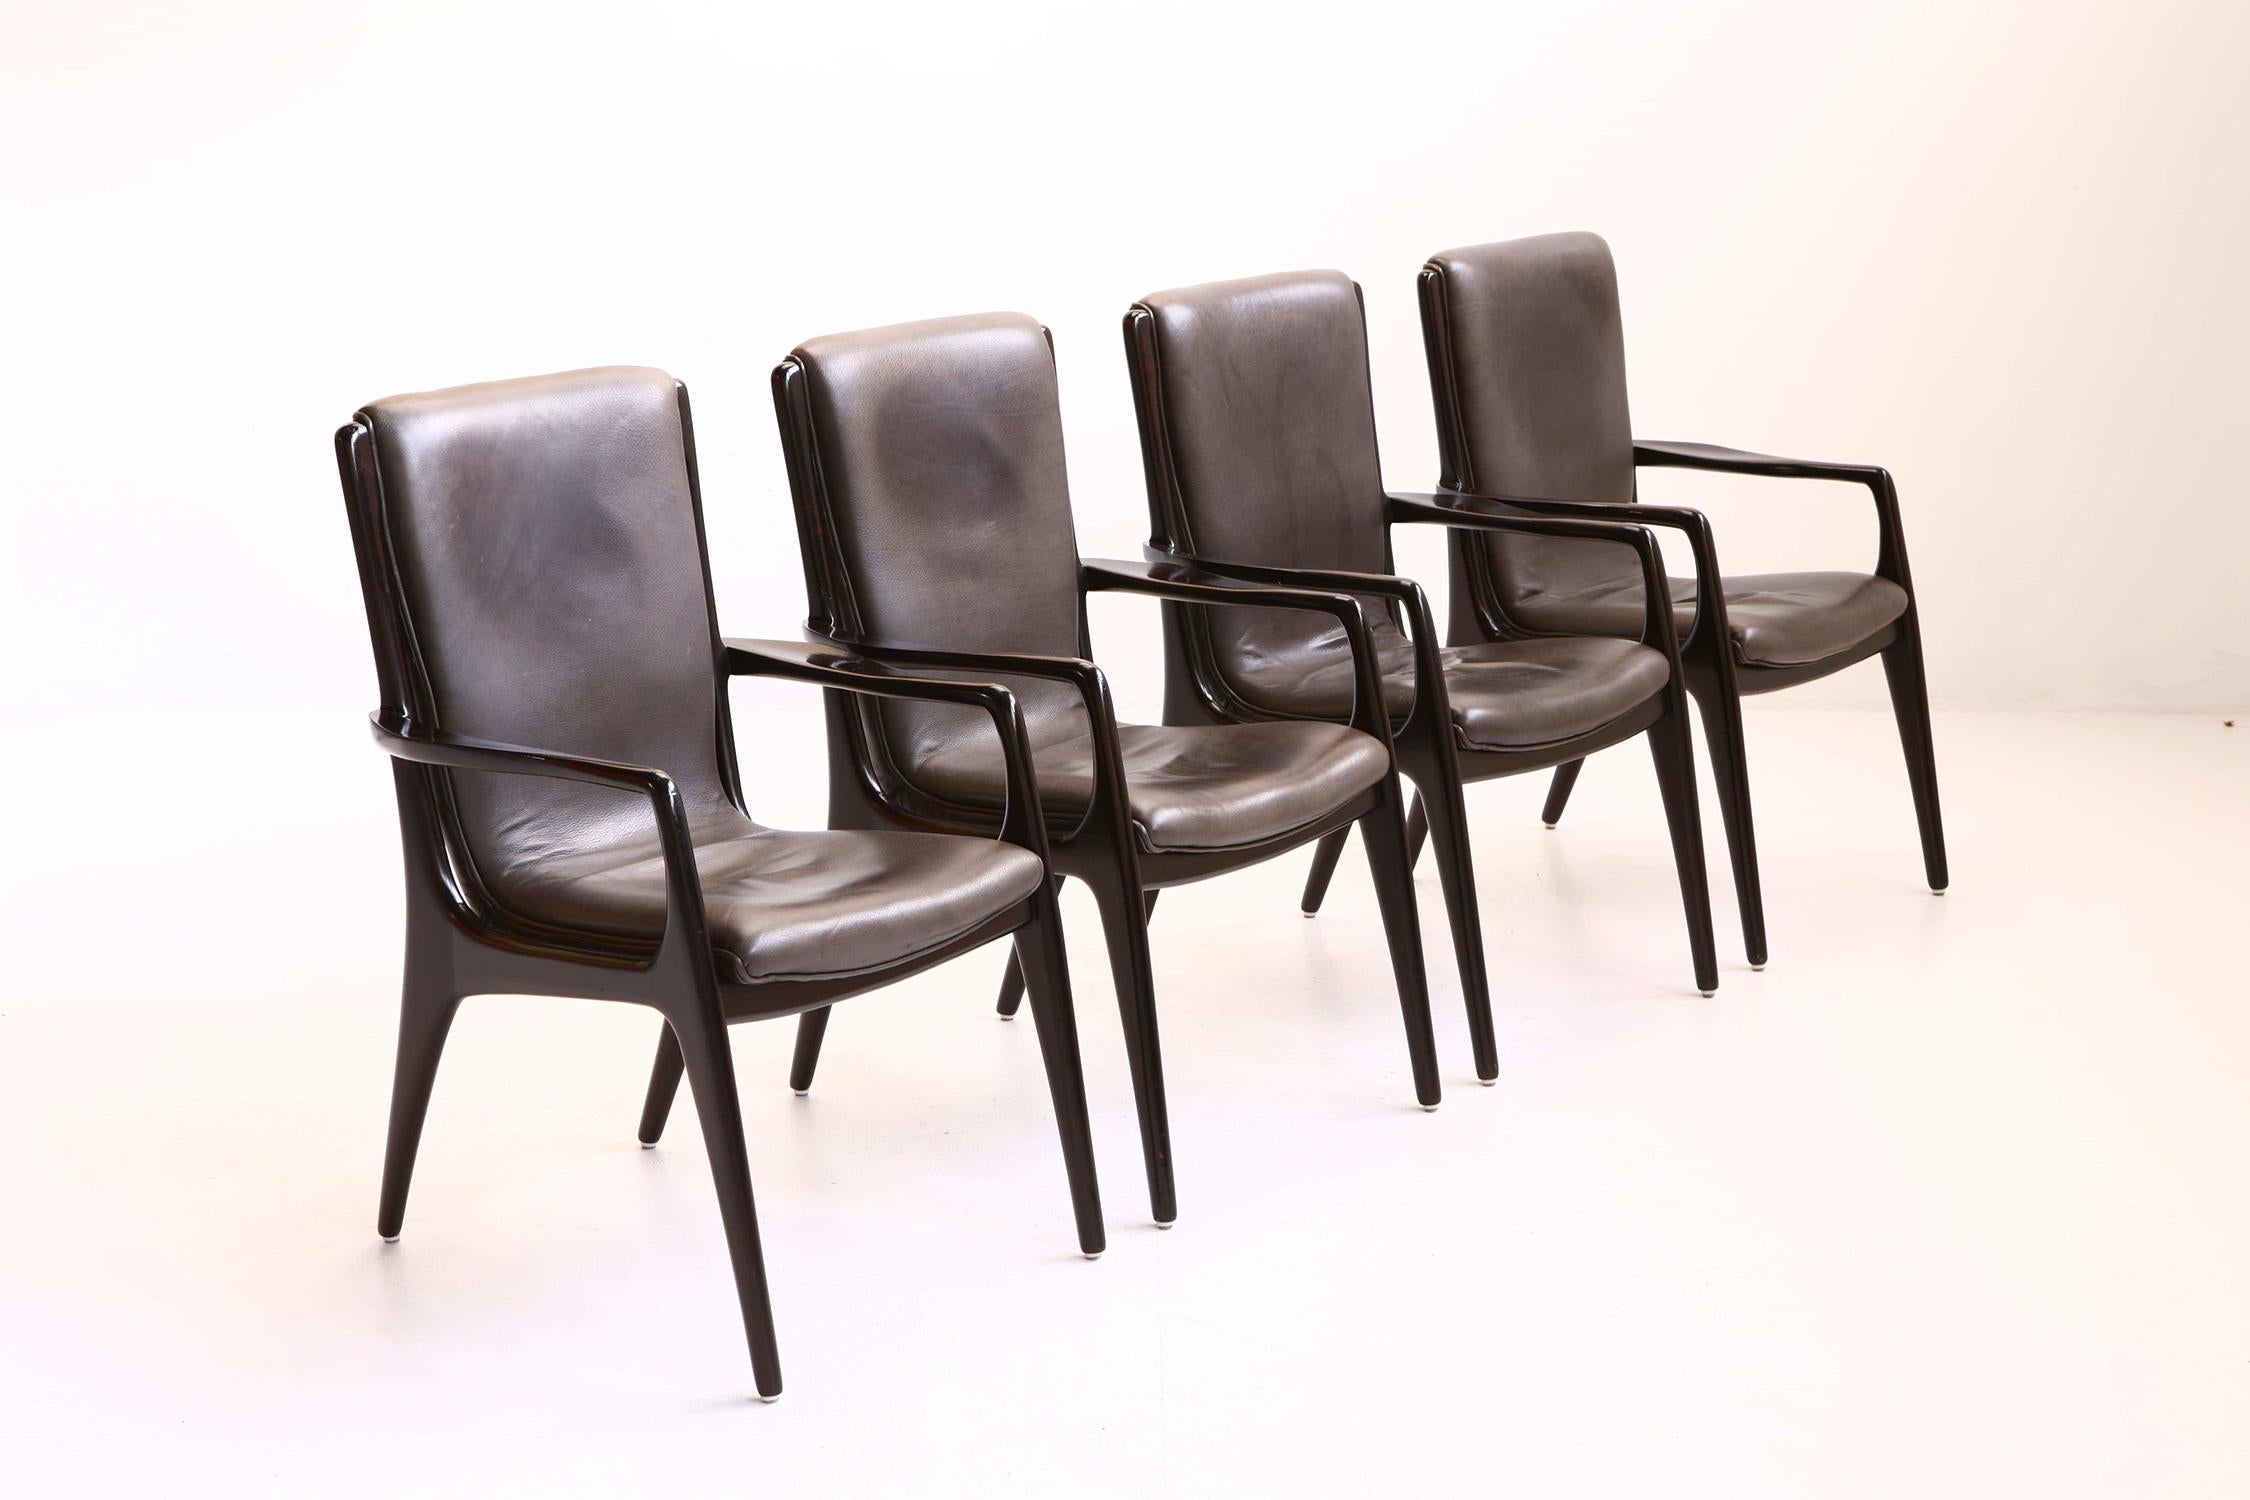 Le travail de Vladimir Kagan était connu pour ses formes organiques et son artisanat de qualité supérieure. Ces chaises sont imprégnées de son sens du design et de son exigence de confort.

Histoire : Vladimir Kagan est né le 29 août 1927 à Worms,